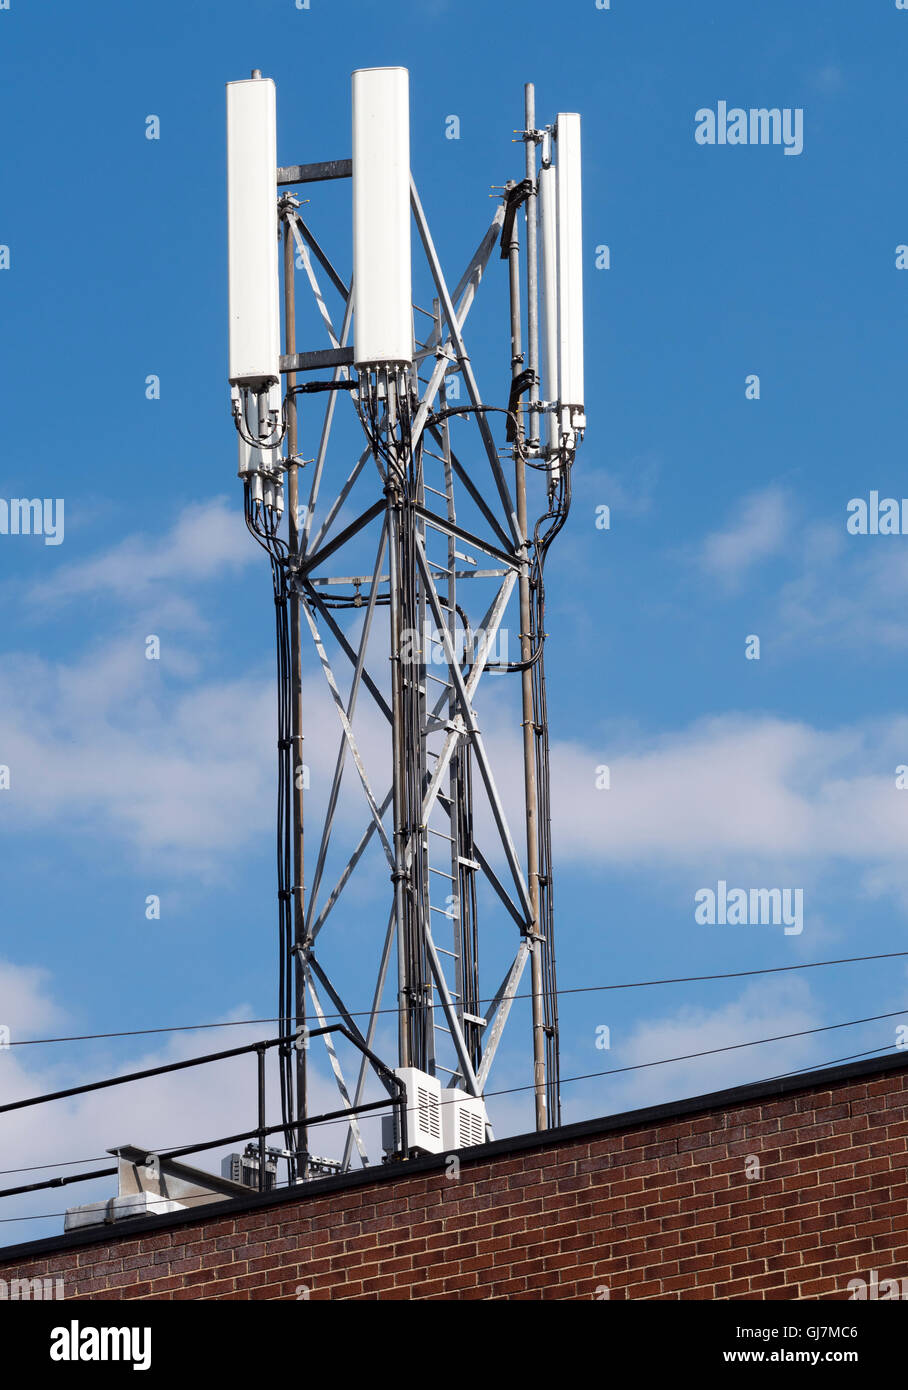 Kommunikation-Antennen - Mast - oben auf Gebäude - Junction Road, Totton, Hampshire, England, UK Stockfoto